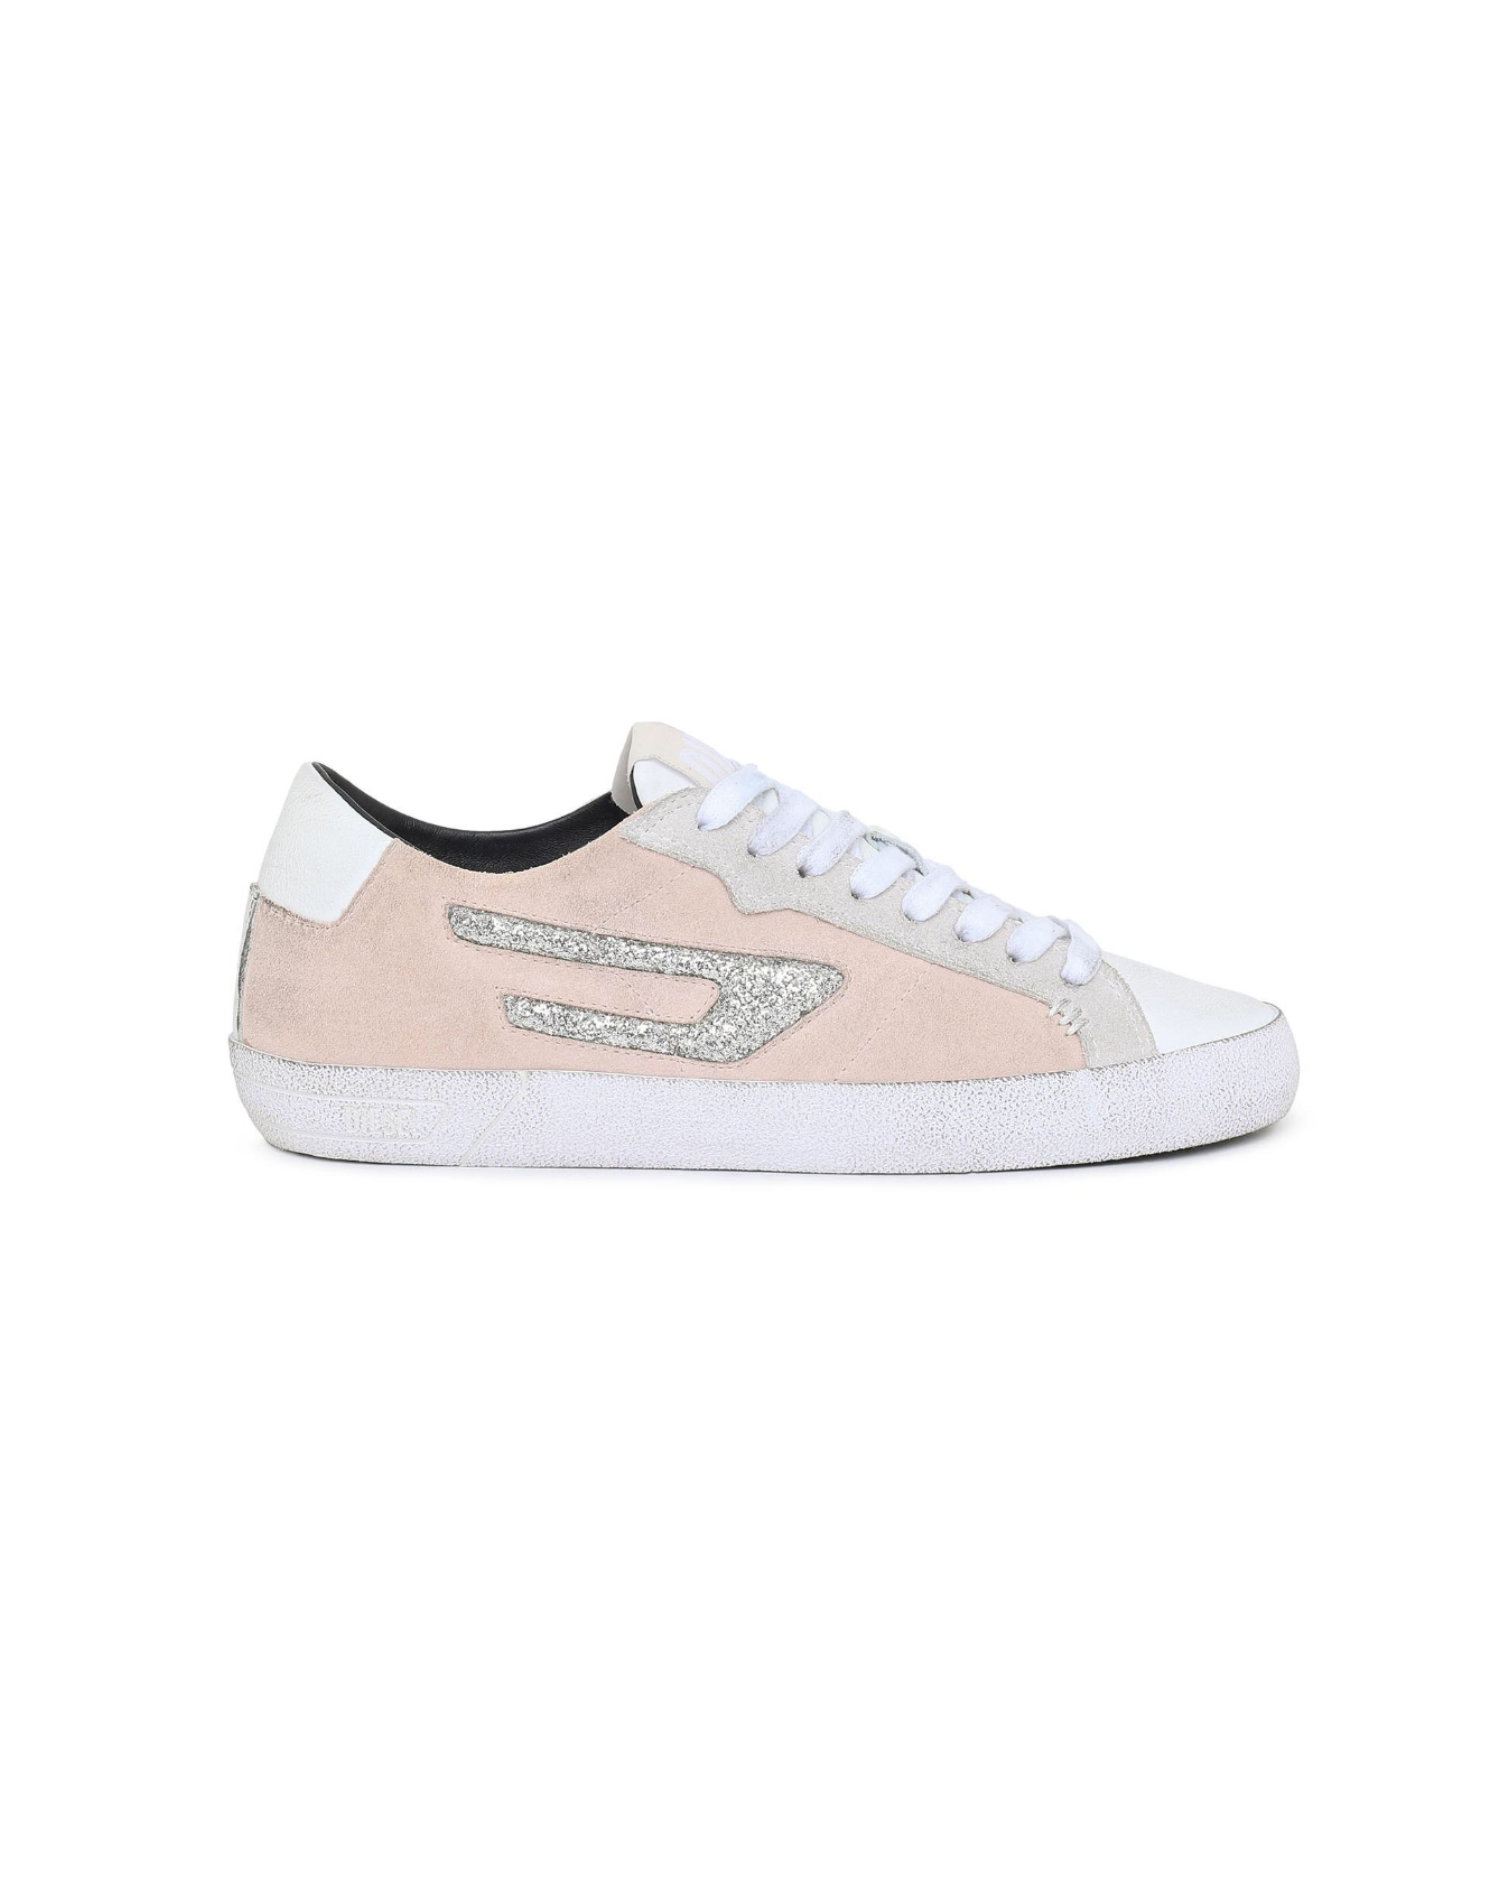 Diesel - S-Leroji Low W Sneakers - Pink/White